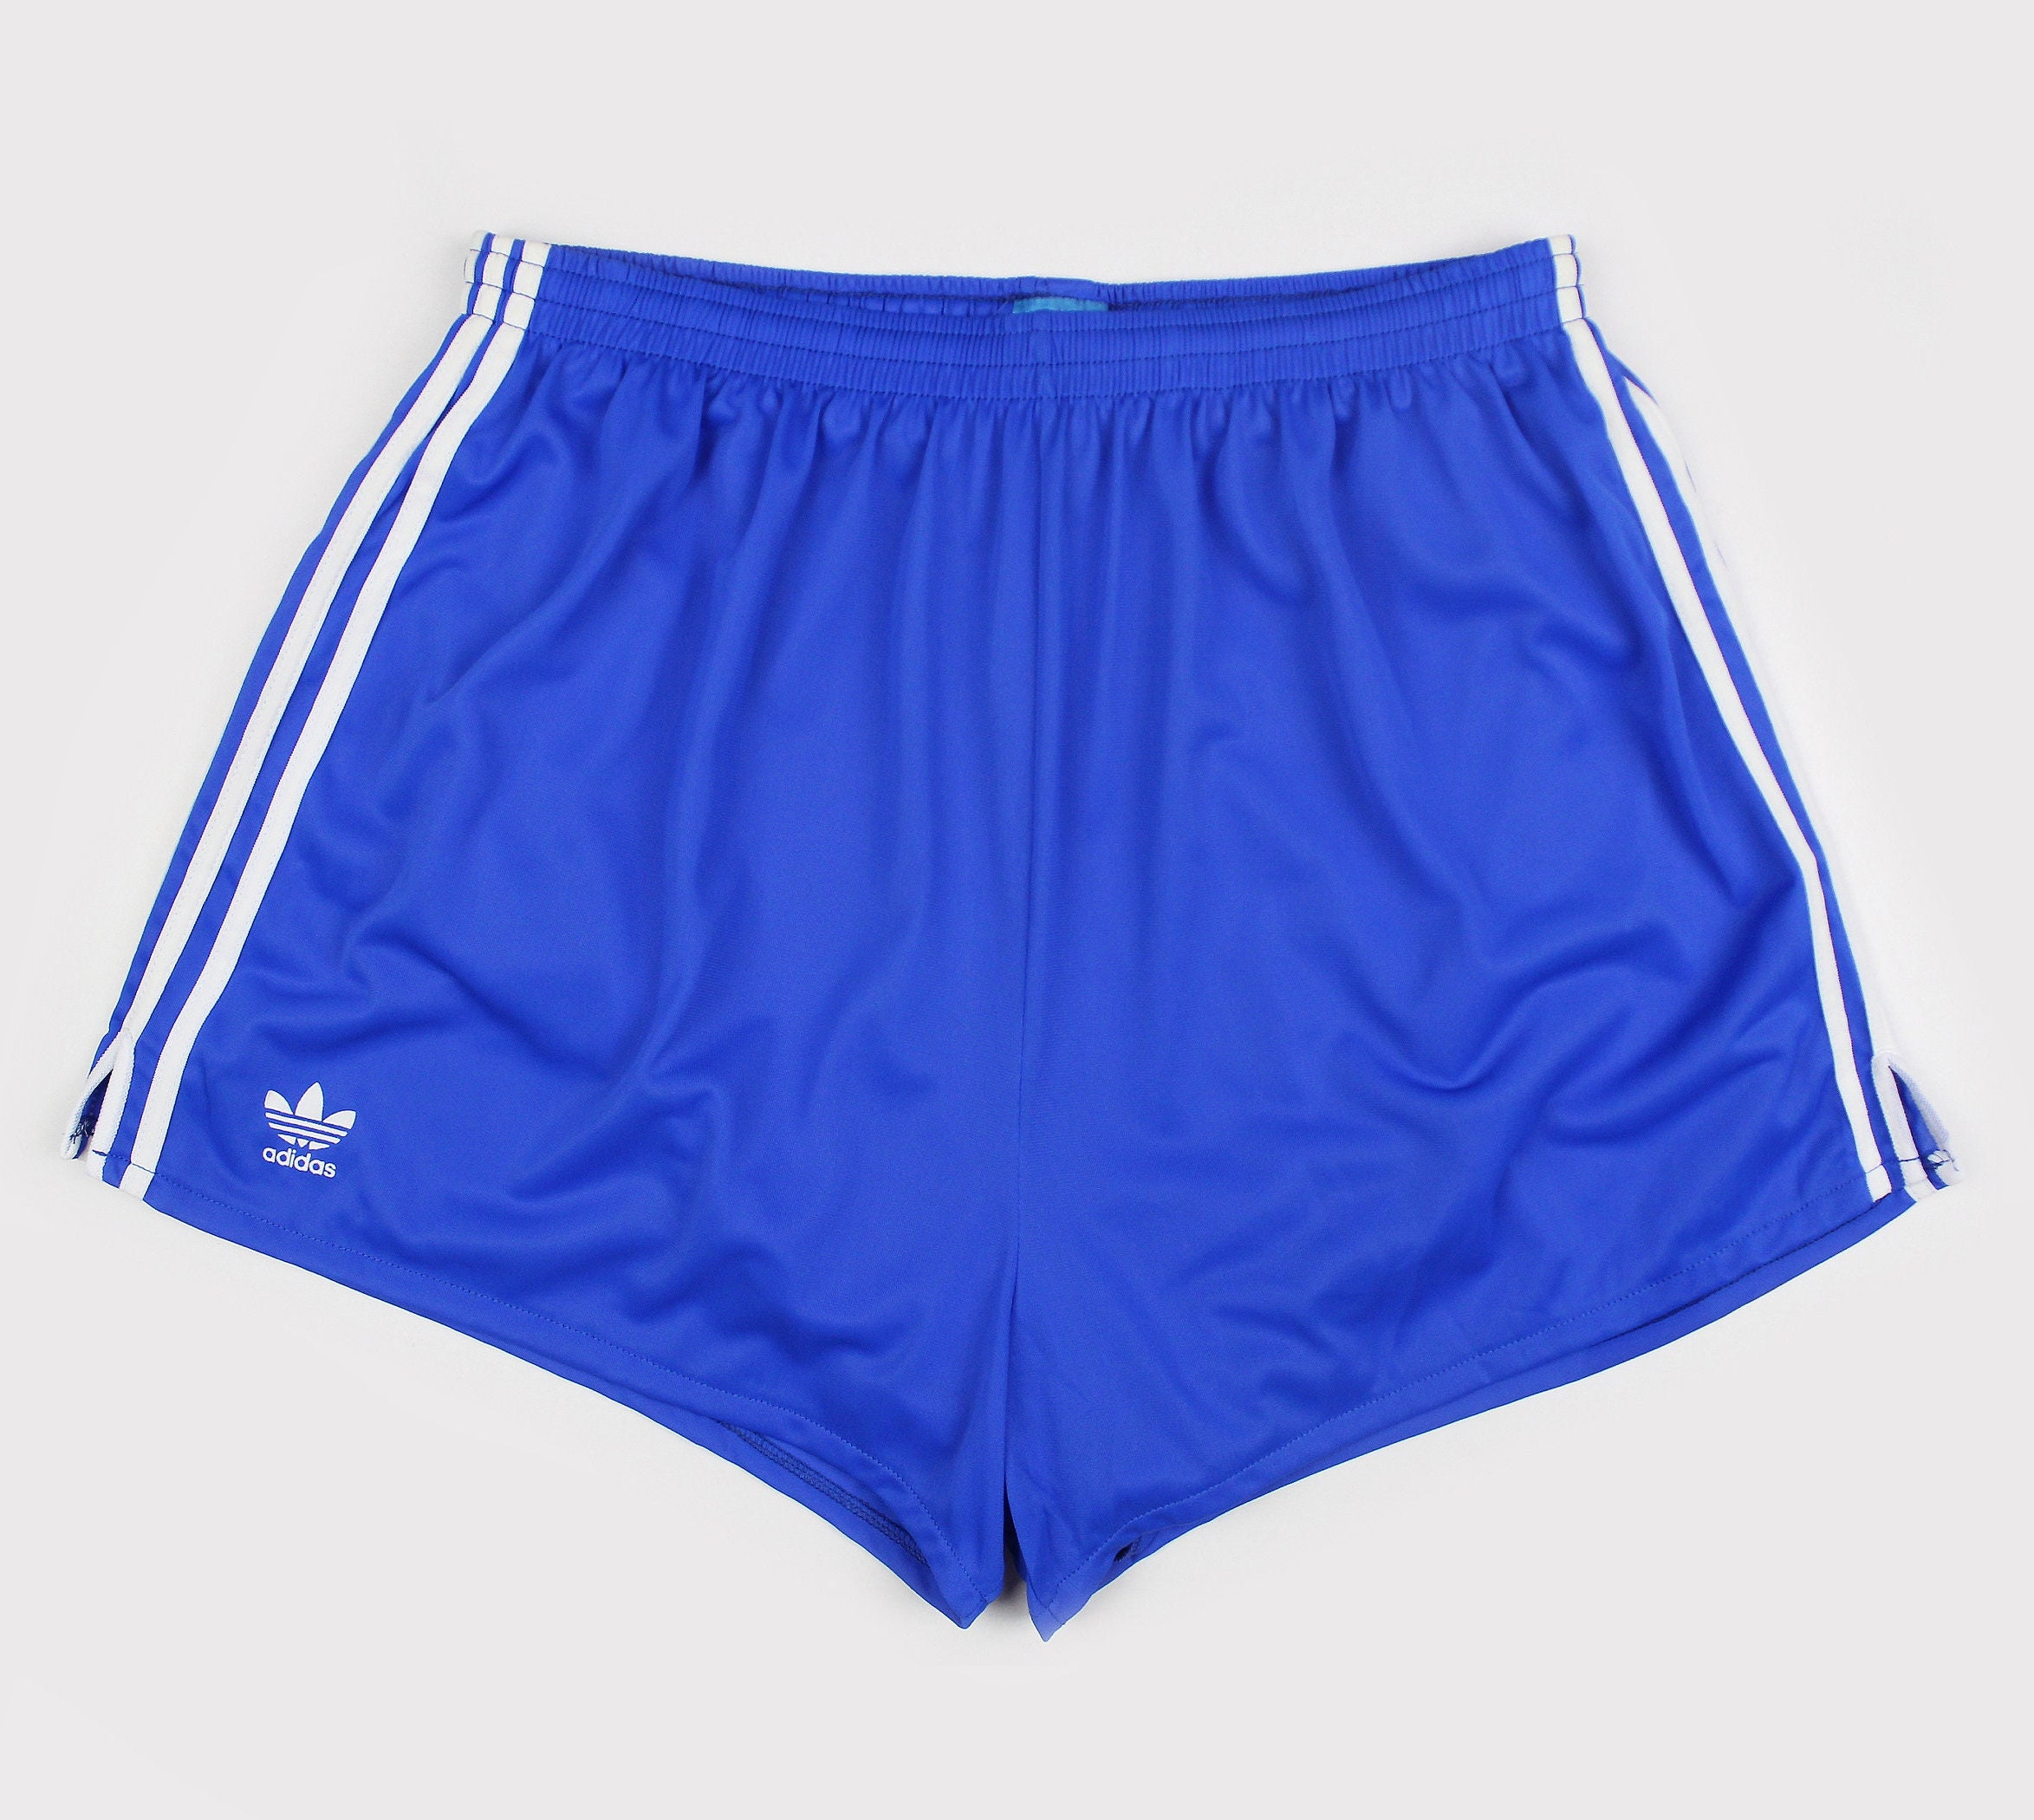 NOS 80s Adidas Vintage Shorts / OG Unisex Etsy New Zealand